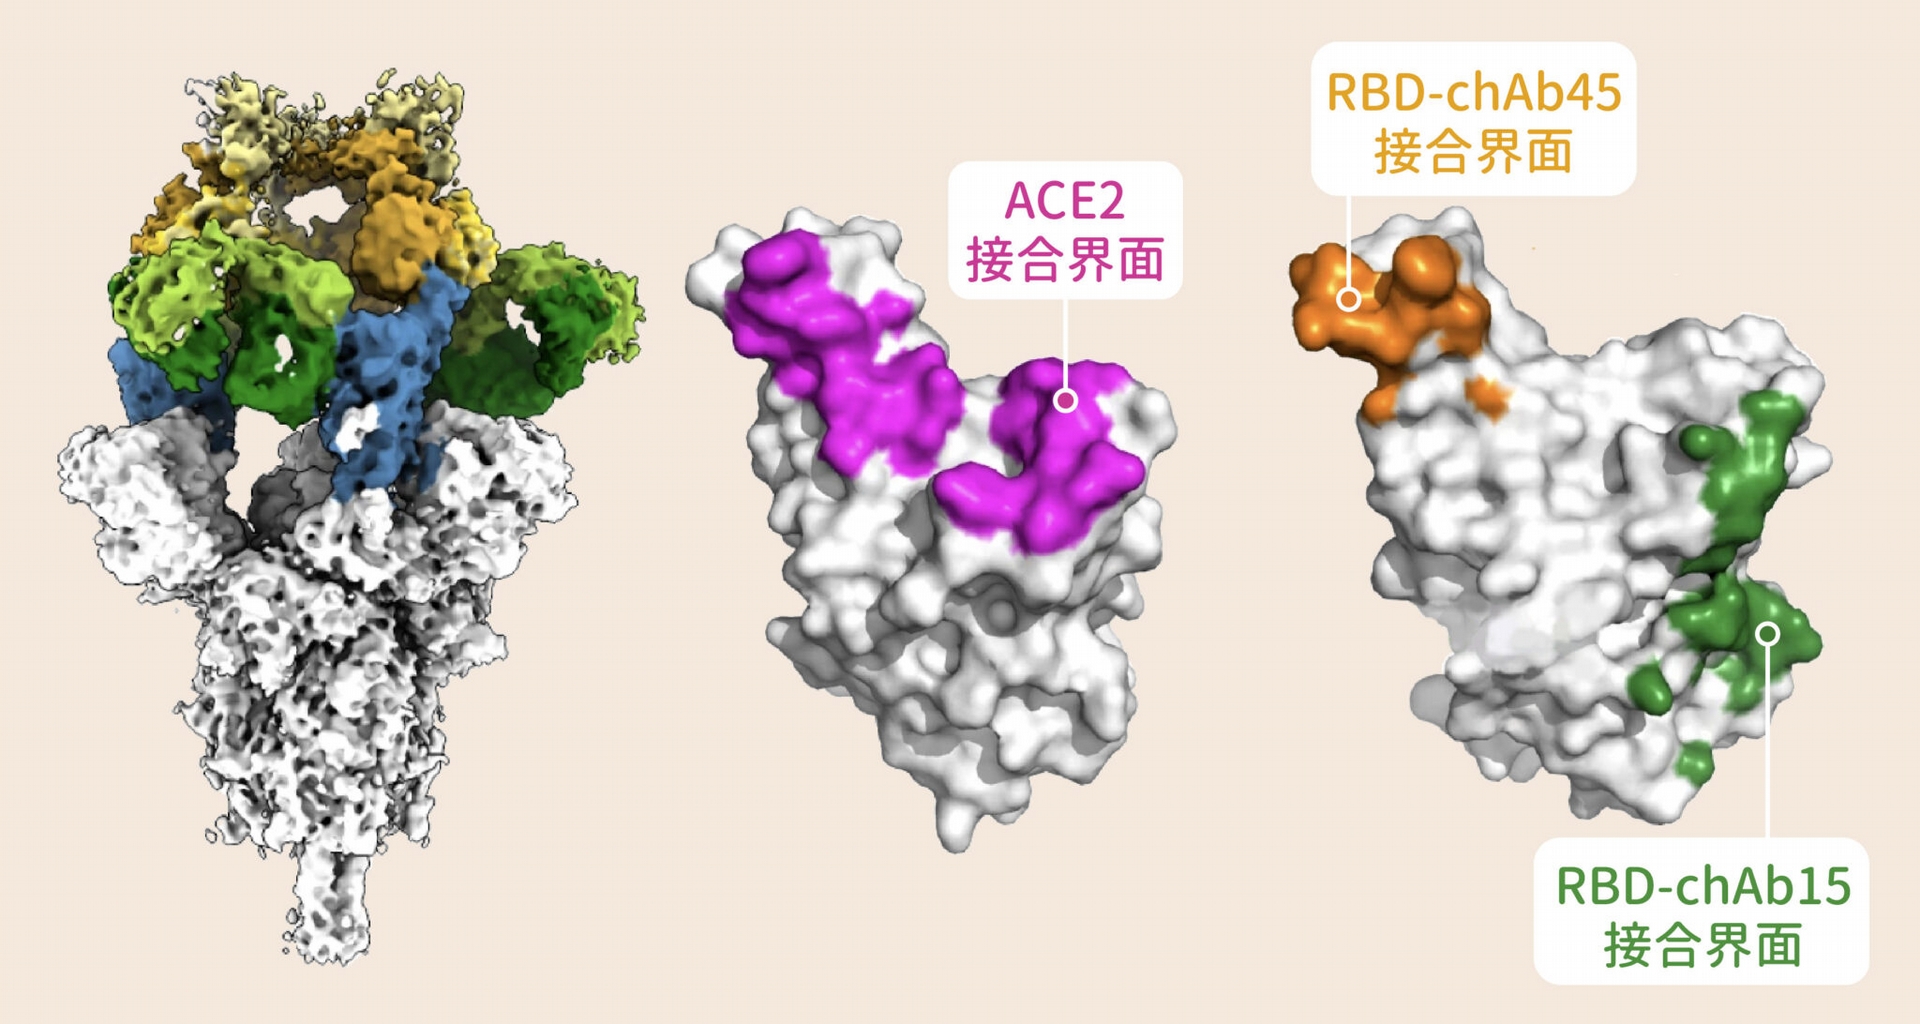 雖然新冠病毒 Alpha 株的棘蛋白表面讓某些抗體難以附著，還好仍有兩款抗體 chAb15（綠色）、chAb45（黃色）能有效「卡住」棘蛋白，干擾棘蛋白與宿主細胞結合。抗體 chAb15、chAb45 附著的位置，正好就是棘蛋白與宿主細胞結合的地方。 圖│Nature Structural & Molecular Biology  